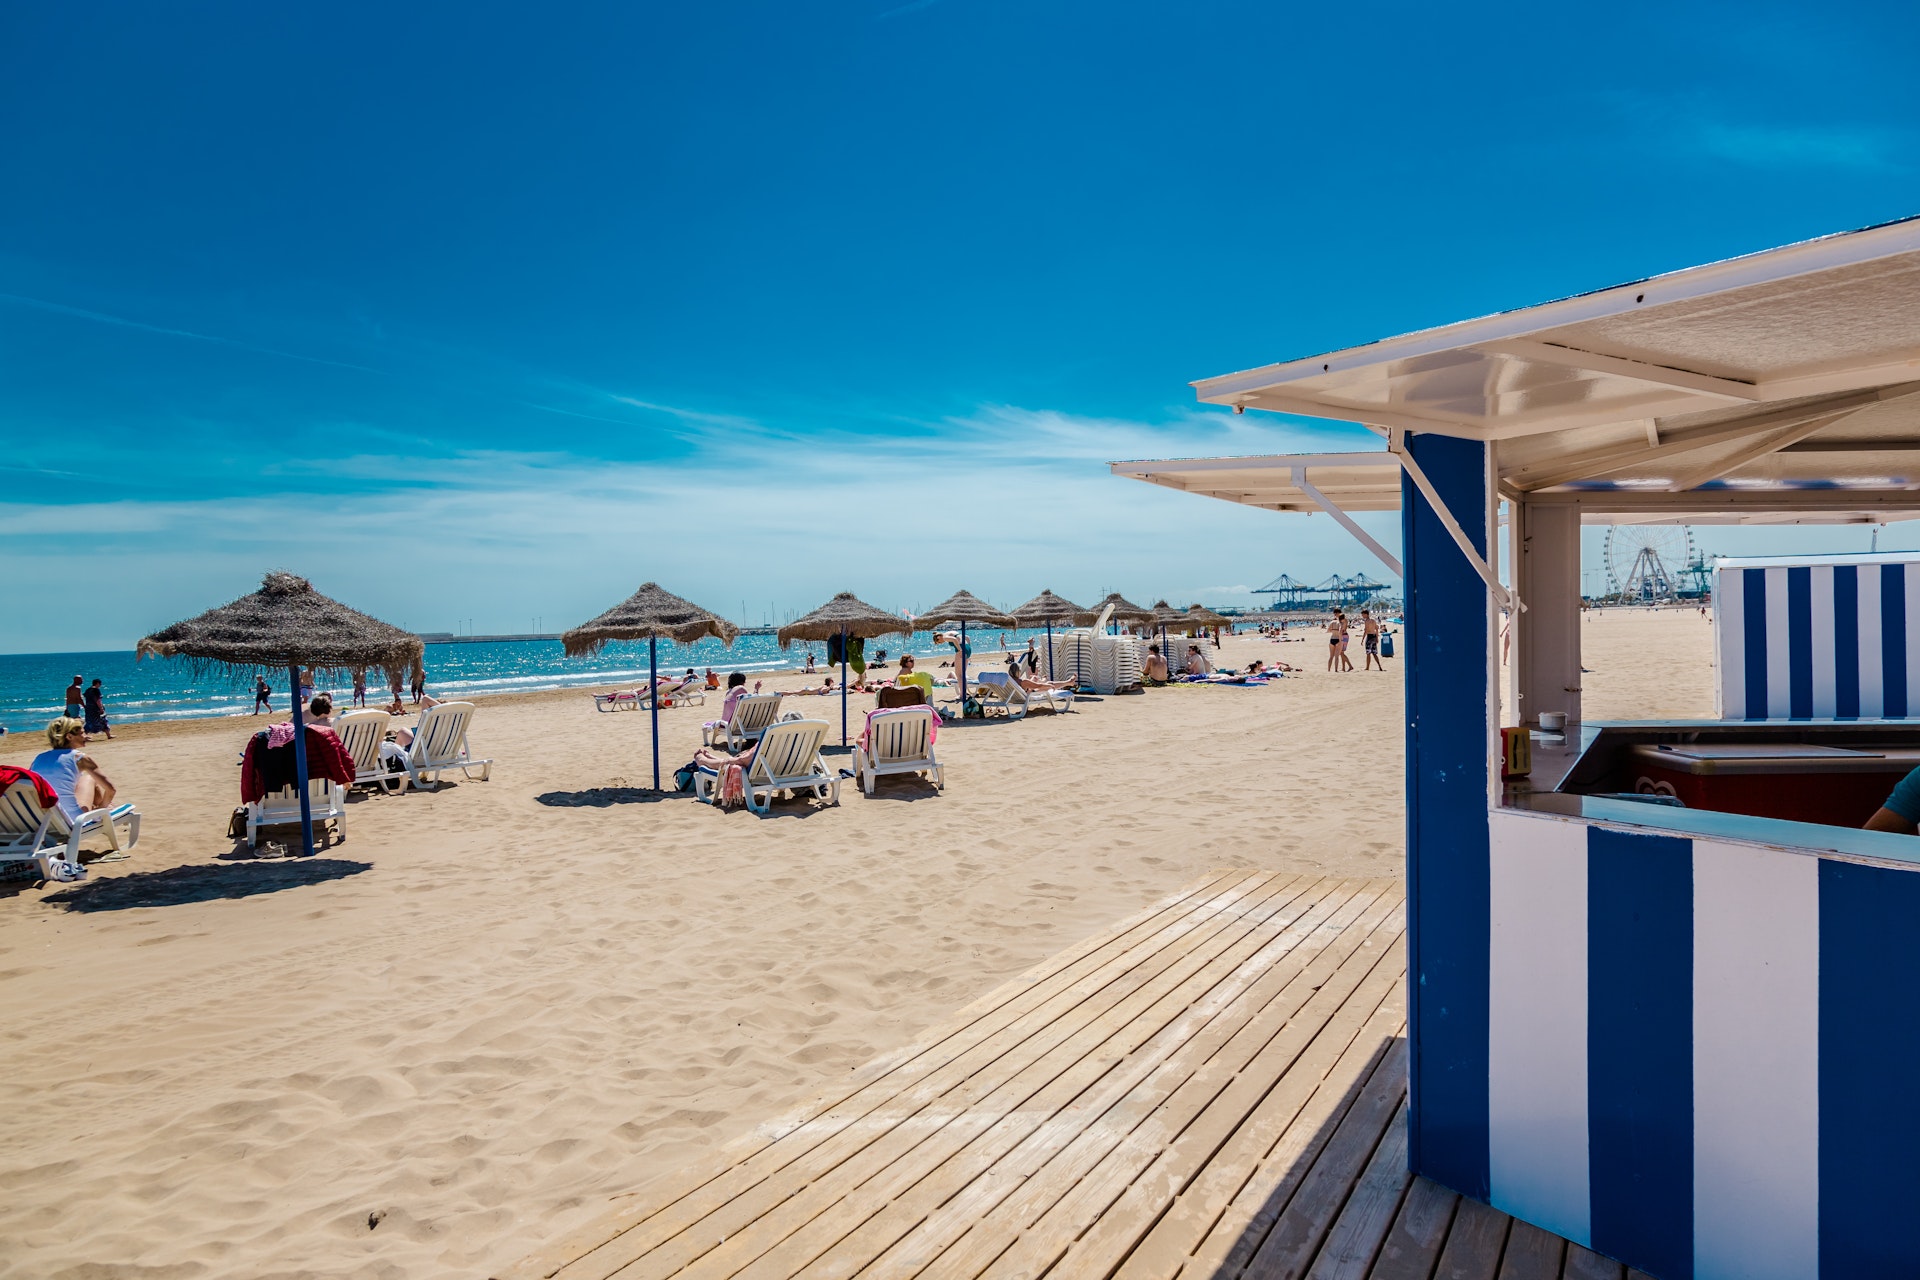  Les millors platges de València: pren el sol del matí abans que gairebé qualsevol altre lloc d'Espanya